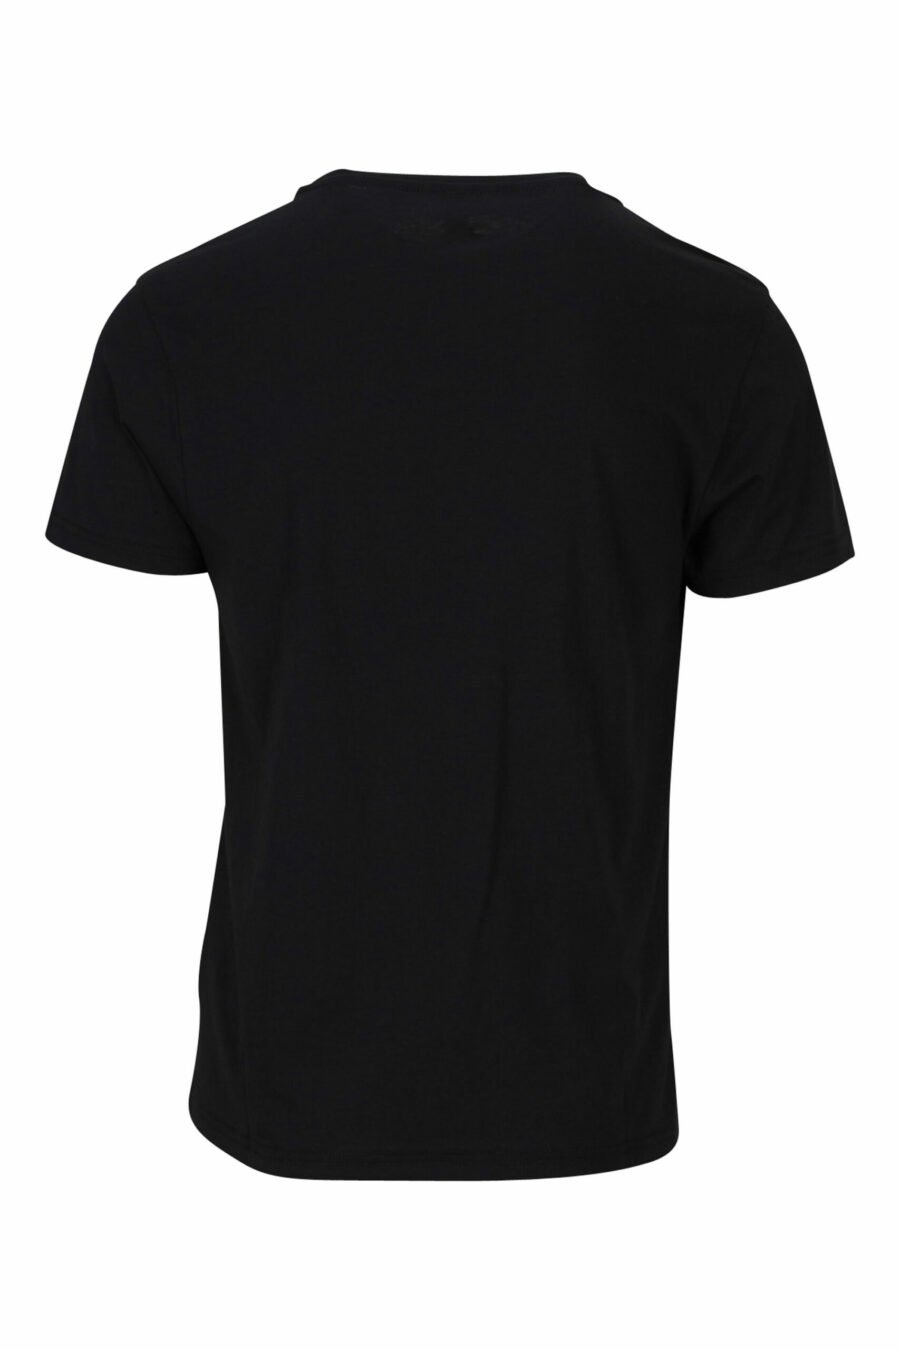 Schwarzes T-Shirt mit monochromem Logoband auf den Schultern - 889316992724 1 skaliert